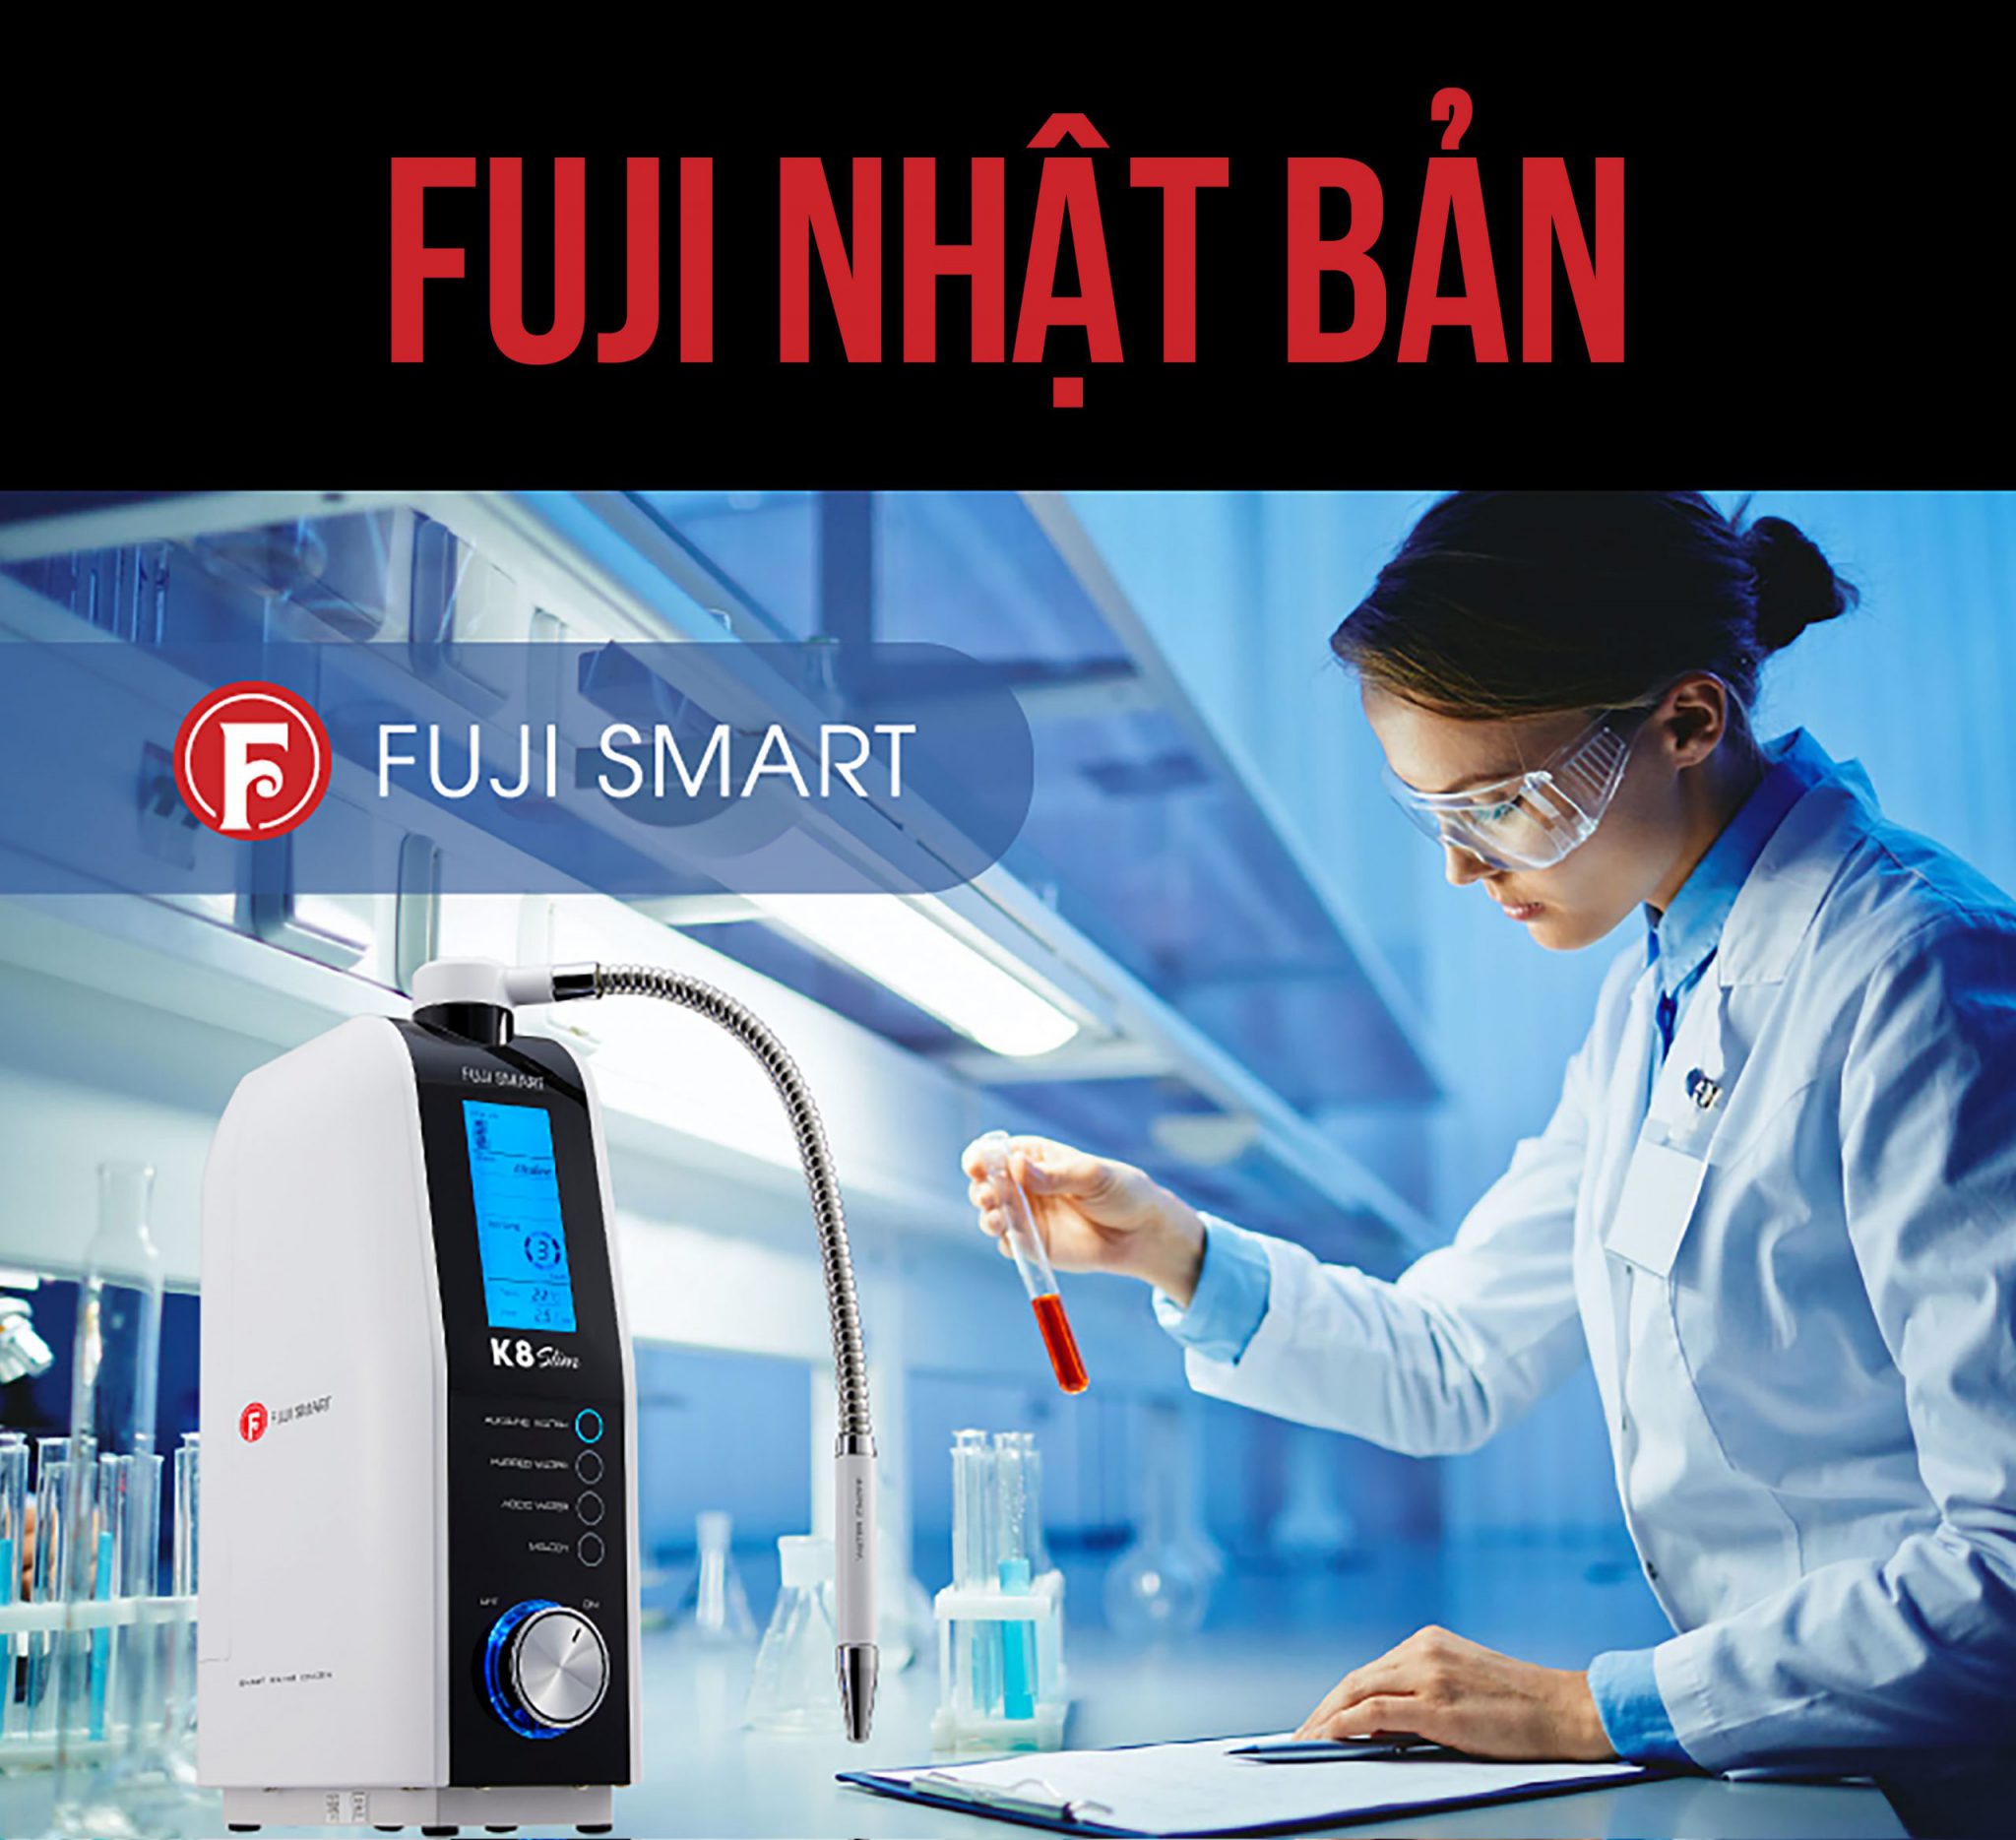 Fuji là công ty chuyên sản xuất các sản phẩm thiết bị y tế